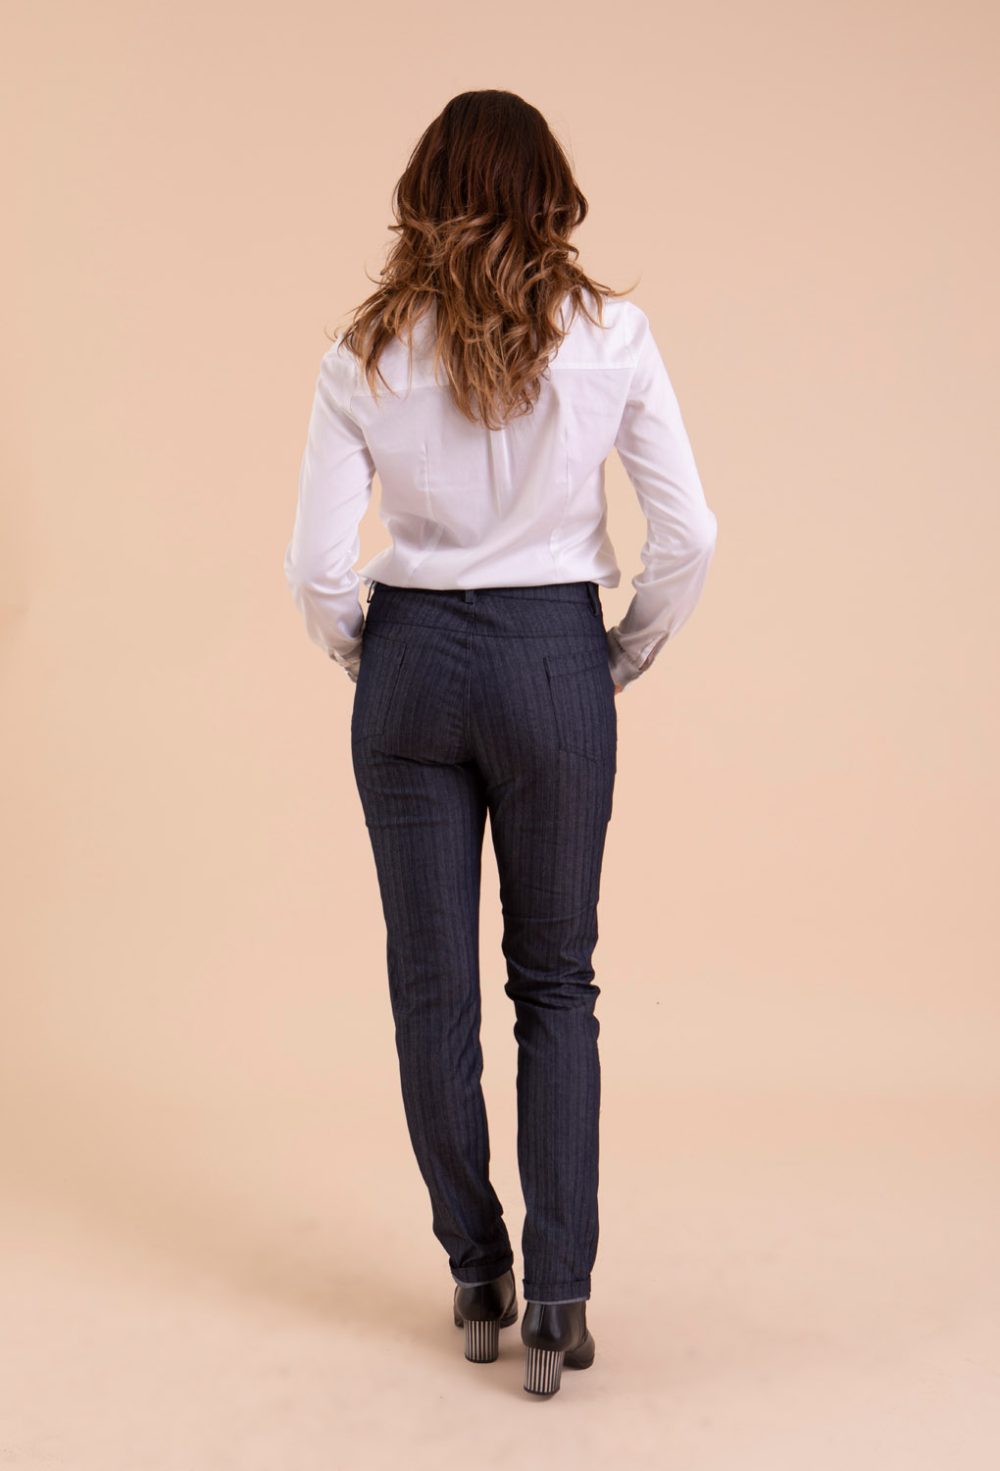 Pantalon jean femme bleu avec de jolies rayures très discrètes. Coupe cigarette qui mettra en valeur votre silhouette. Conception et fabrication française.